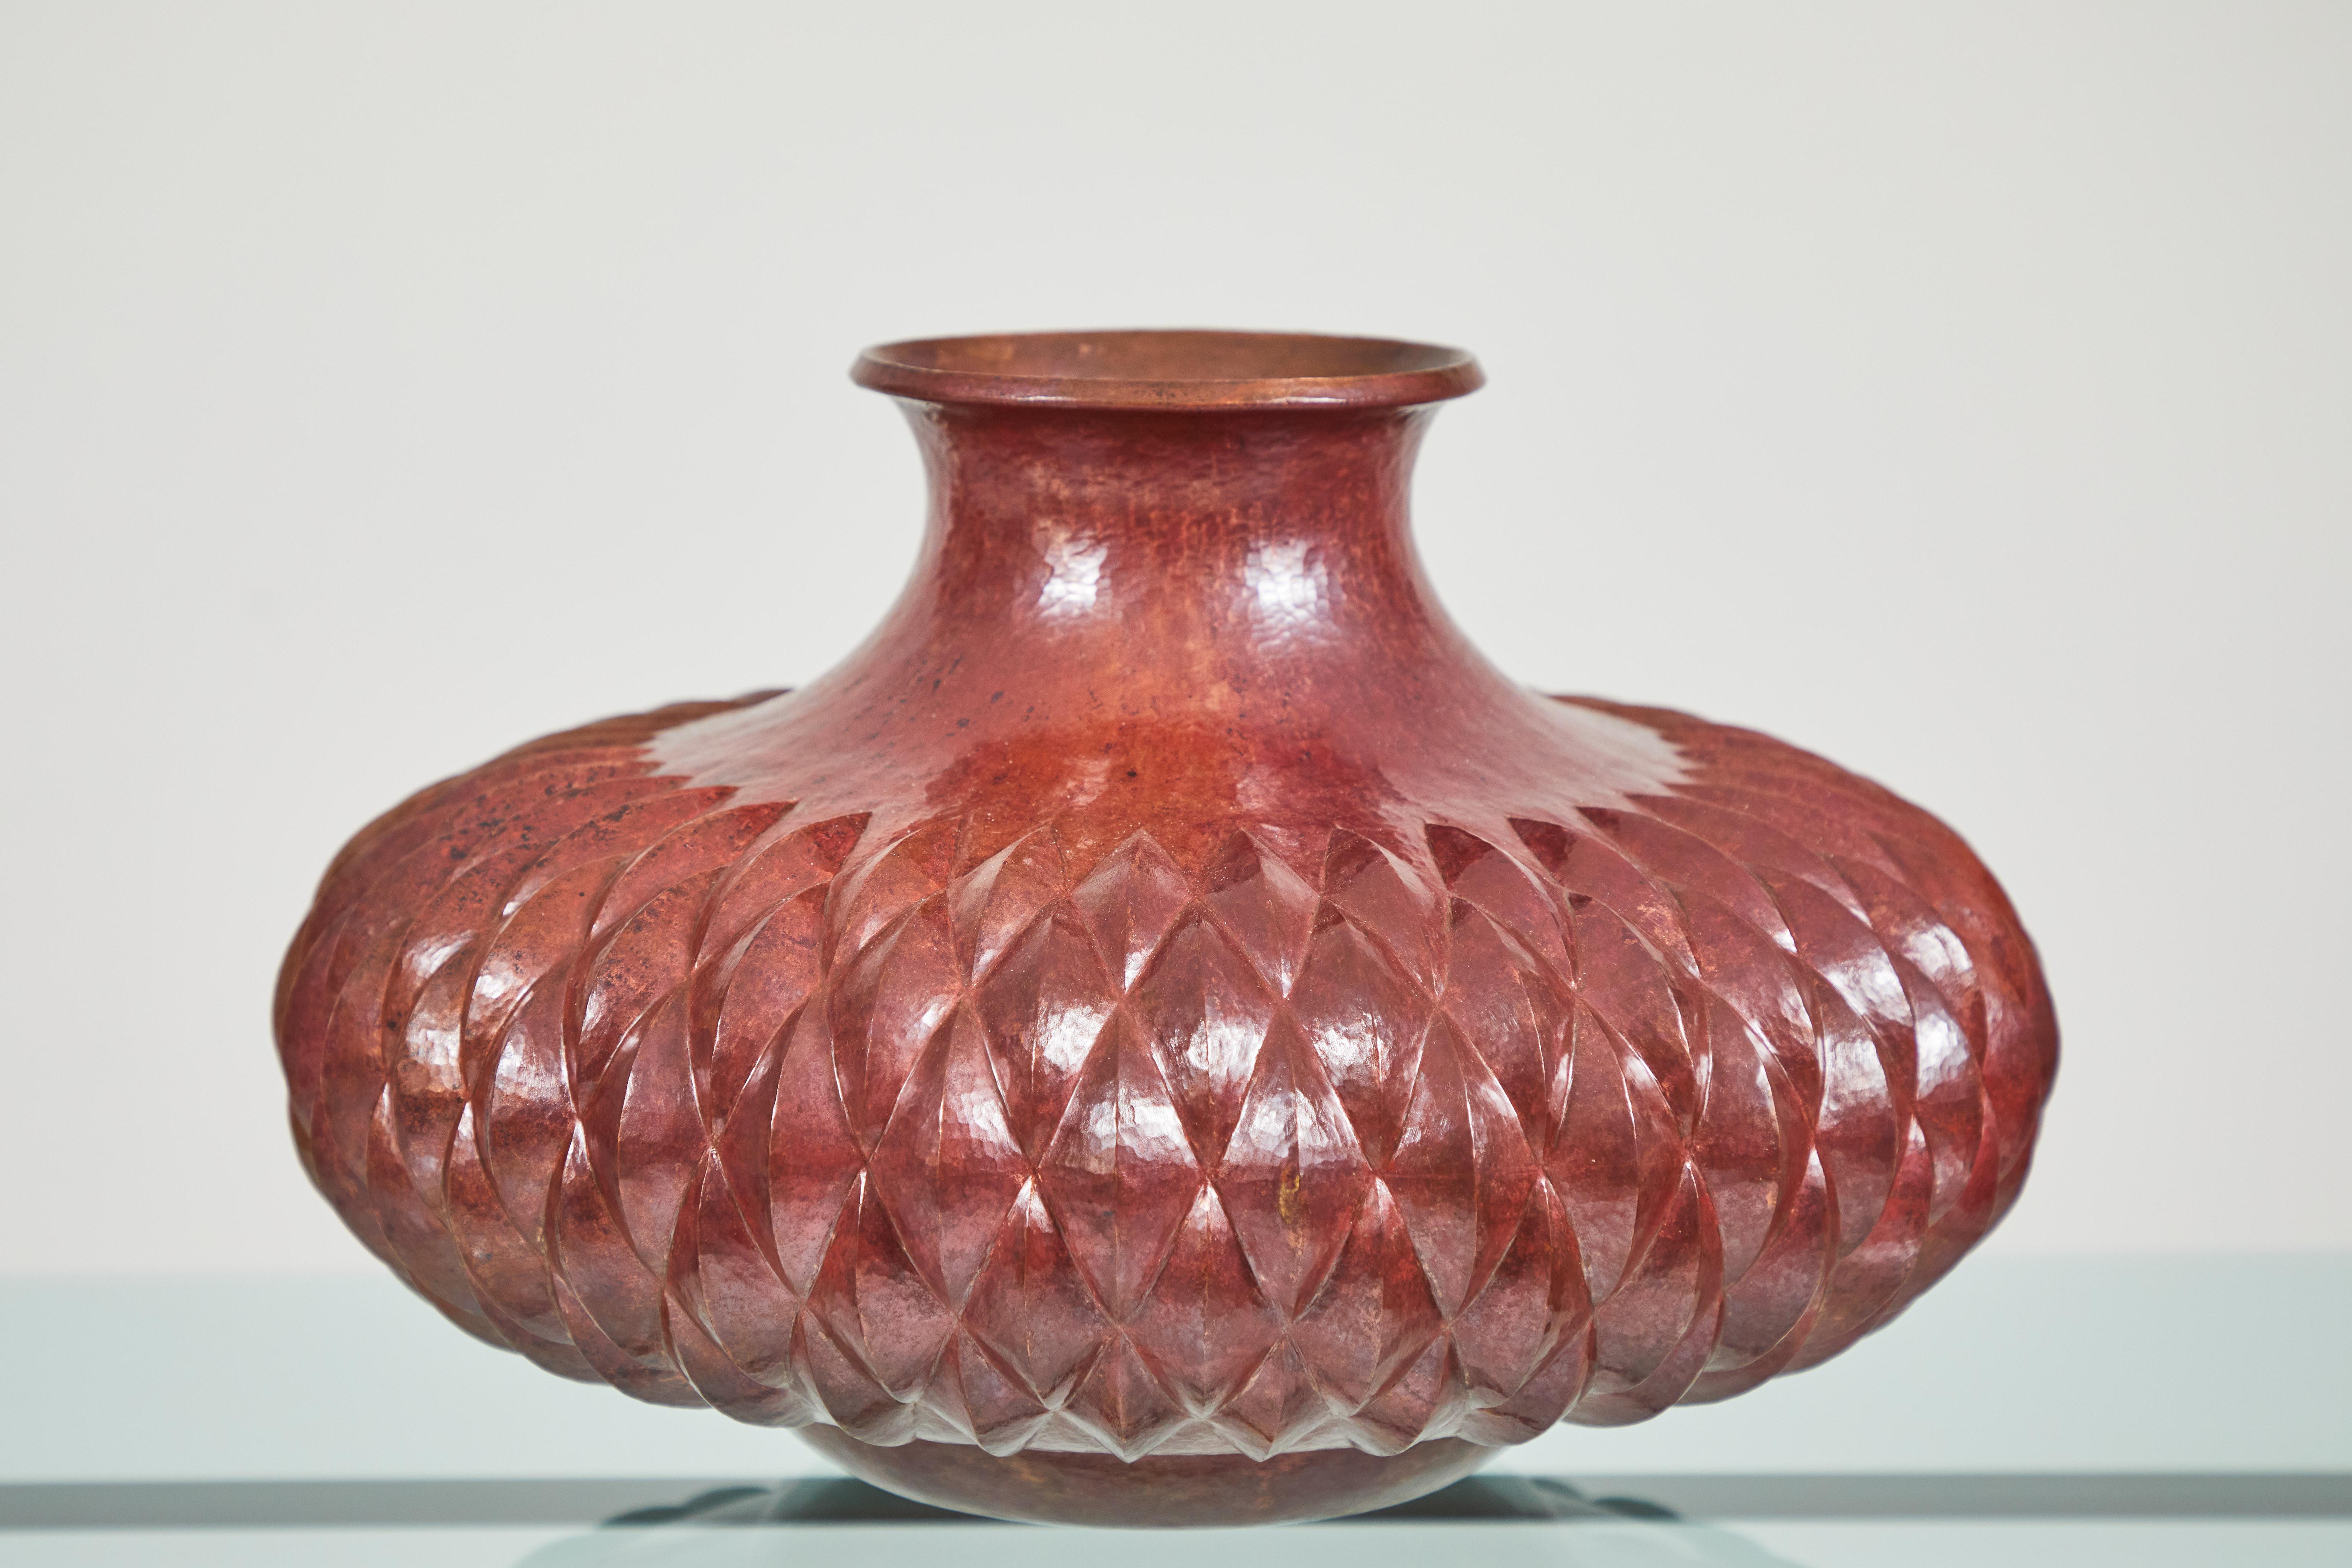 Fabriqué par Ignacio Punzo Ángel, ce vase en cuivre a été bruni à la main et ciselé de multiples motifs en forme de diamant. La famille Punzo est réputée pour son savoir-faire en matière de cuivre et d'argent. Située à Santa Clara Del Cobre au